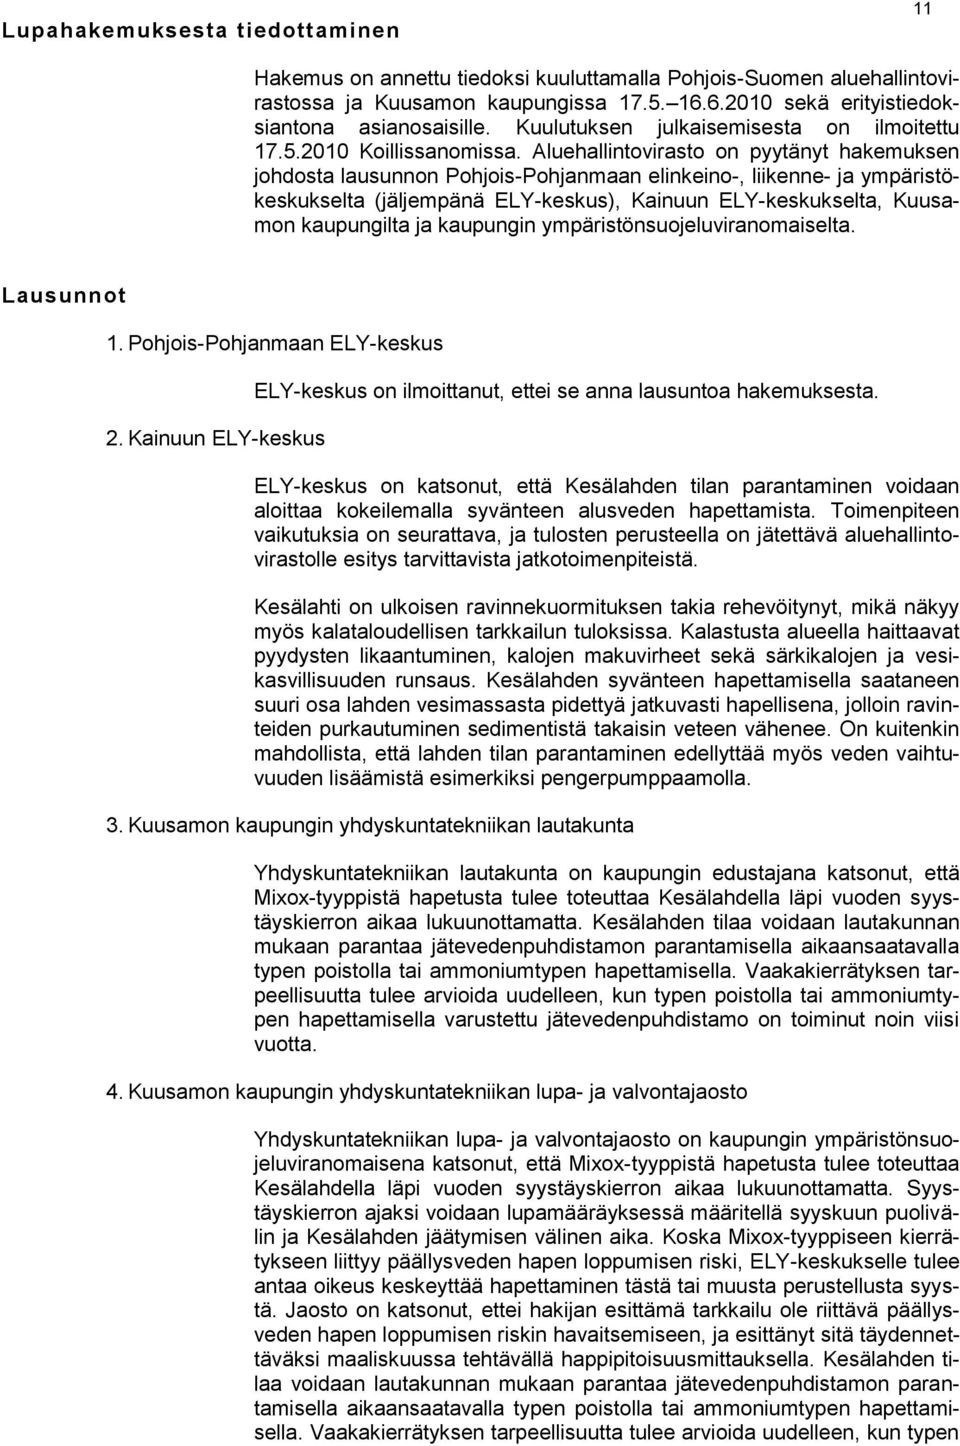 Aluehallintovirasto on pyytänyt hakemuksen johdosta lausunnon Pohjois-Pohjanmaan elinkeino-, liikenne- ja ympäristökeskukselta (jäljempänä ELY-keskus), Kainuun ELY-keskukselta, Kuusamon kaupungilta